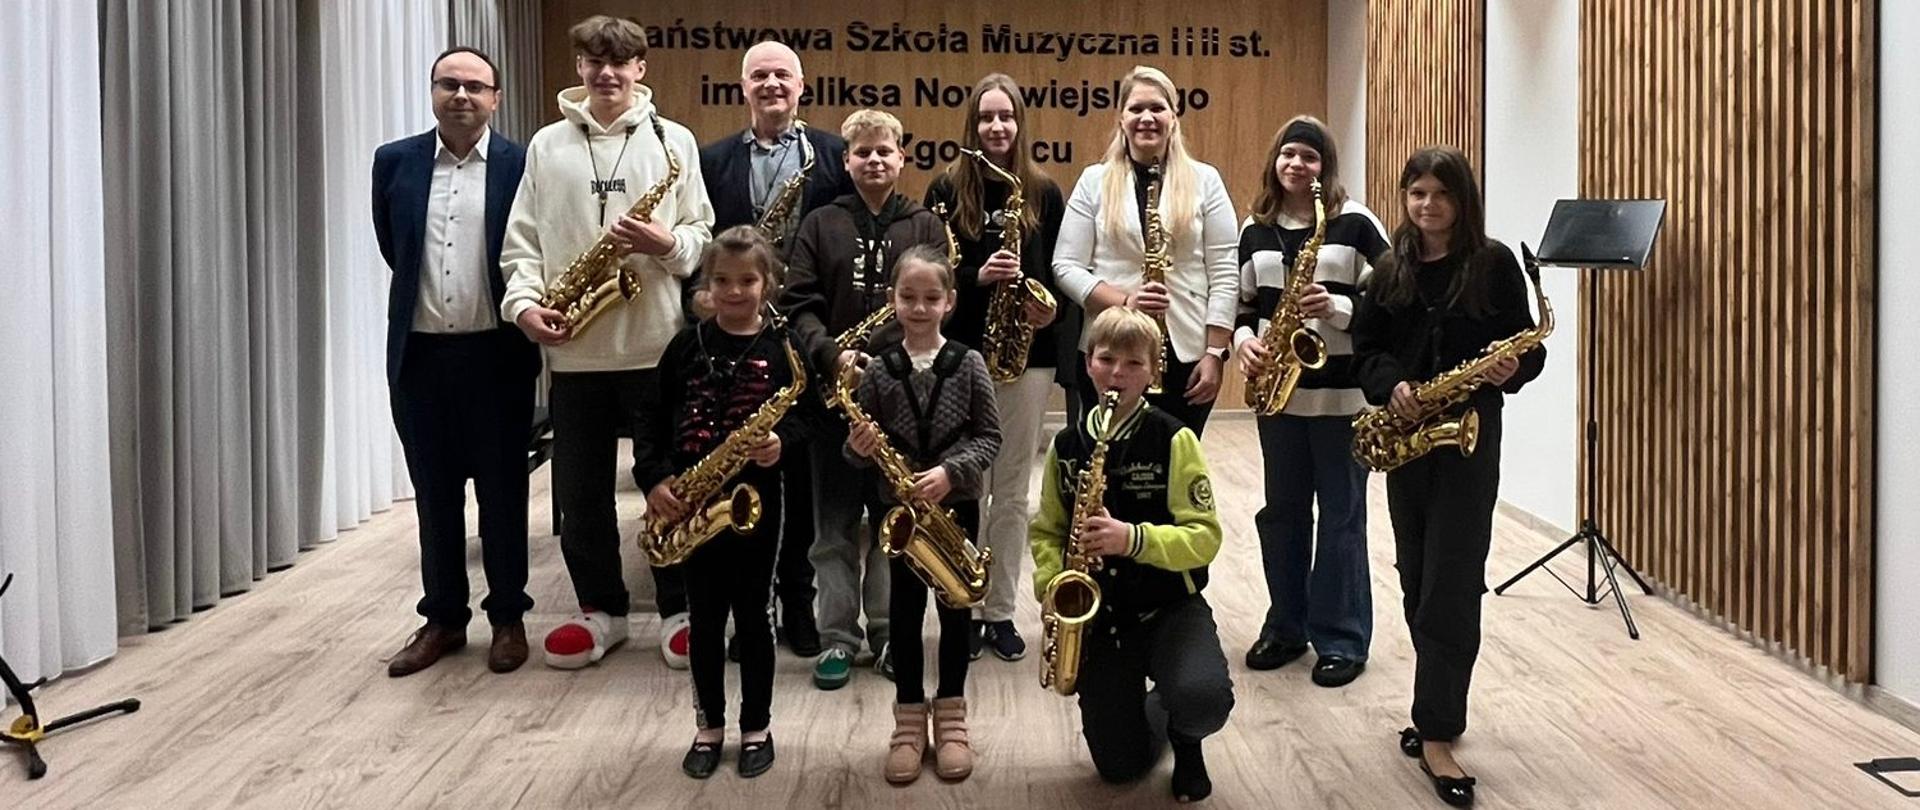 Zdjęcie grupowe saksofonistów z instrumentami.